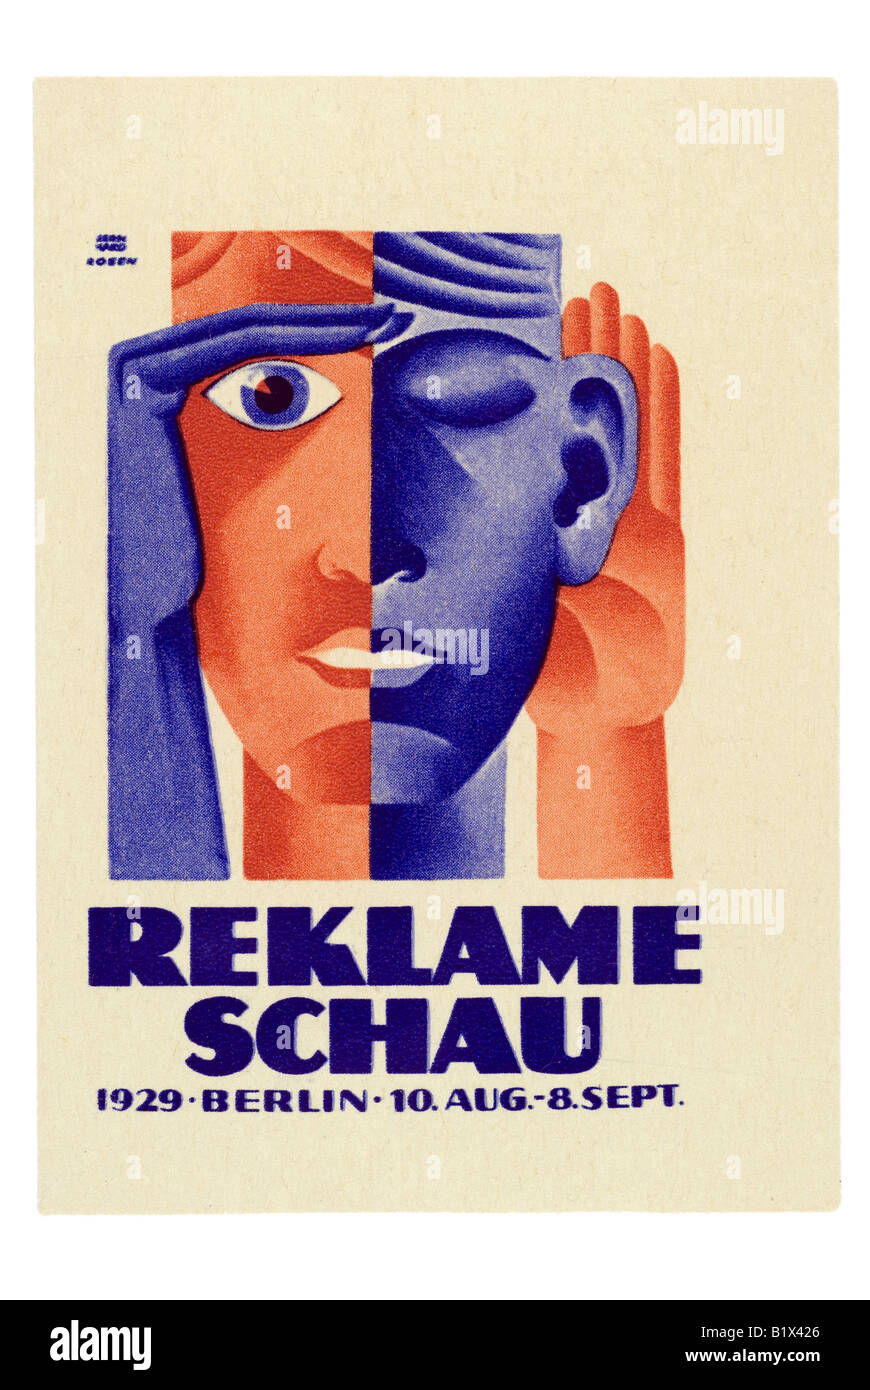 Reklameschau, Berlin 1929, 10. Aug. - 8. Sept. Stockfoto